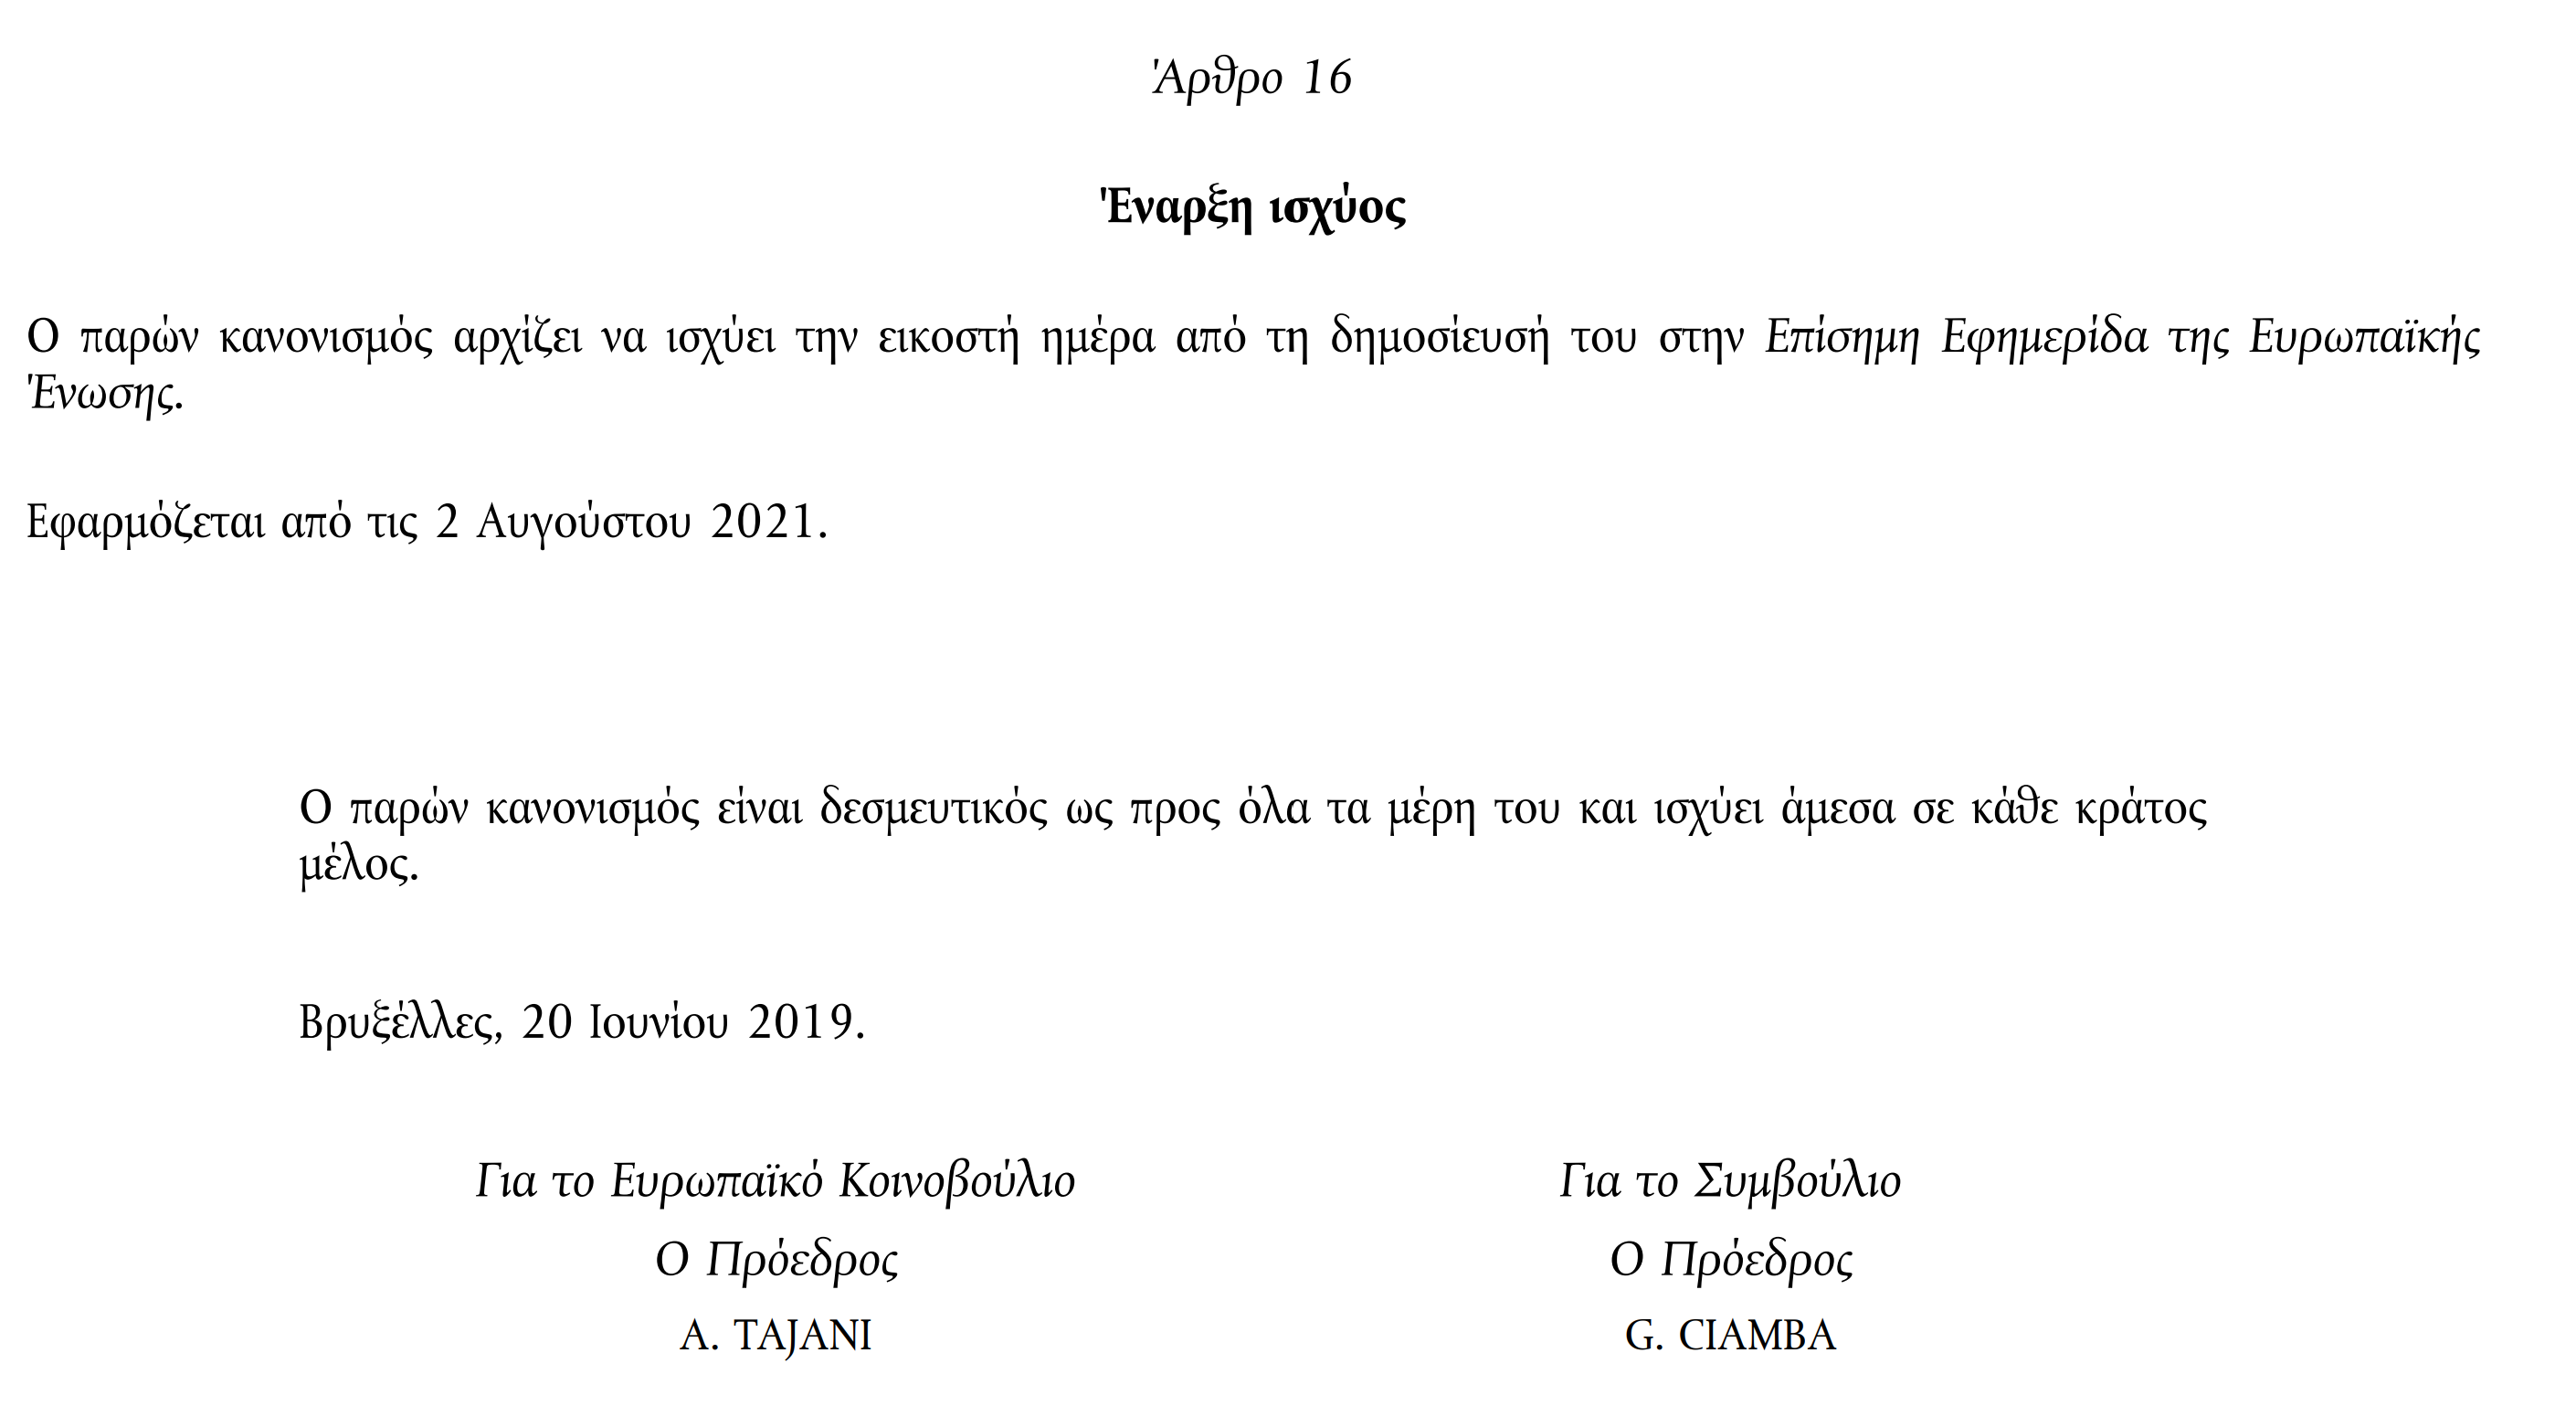 Η απόφαση της ΕΕ το 2019 που θέτει τα χρονικά όρια για τις νέες ταυτότητες την 2α Αυγούστου του 2021, χρονικό όριο που δεν «έπιασε» η Ελλάδα